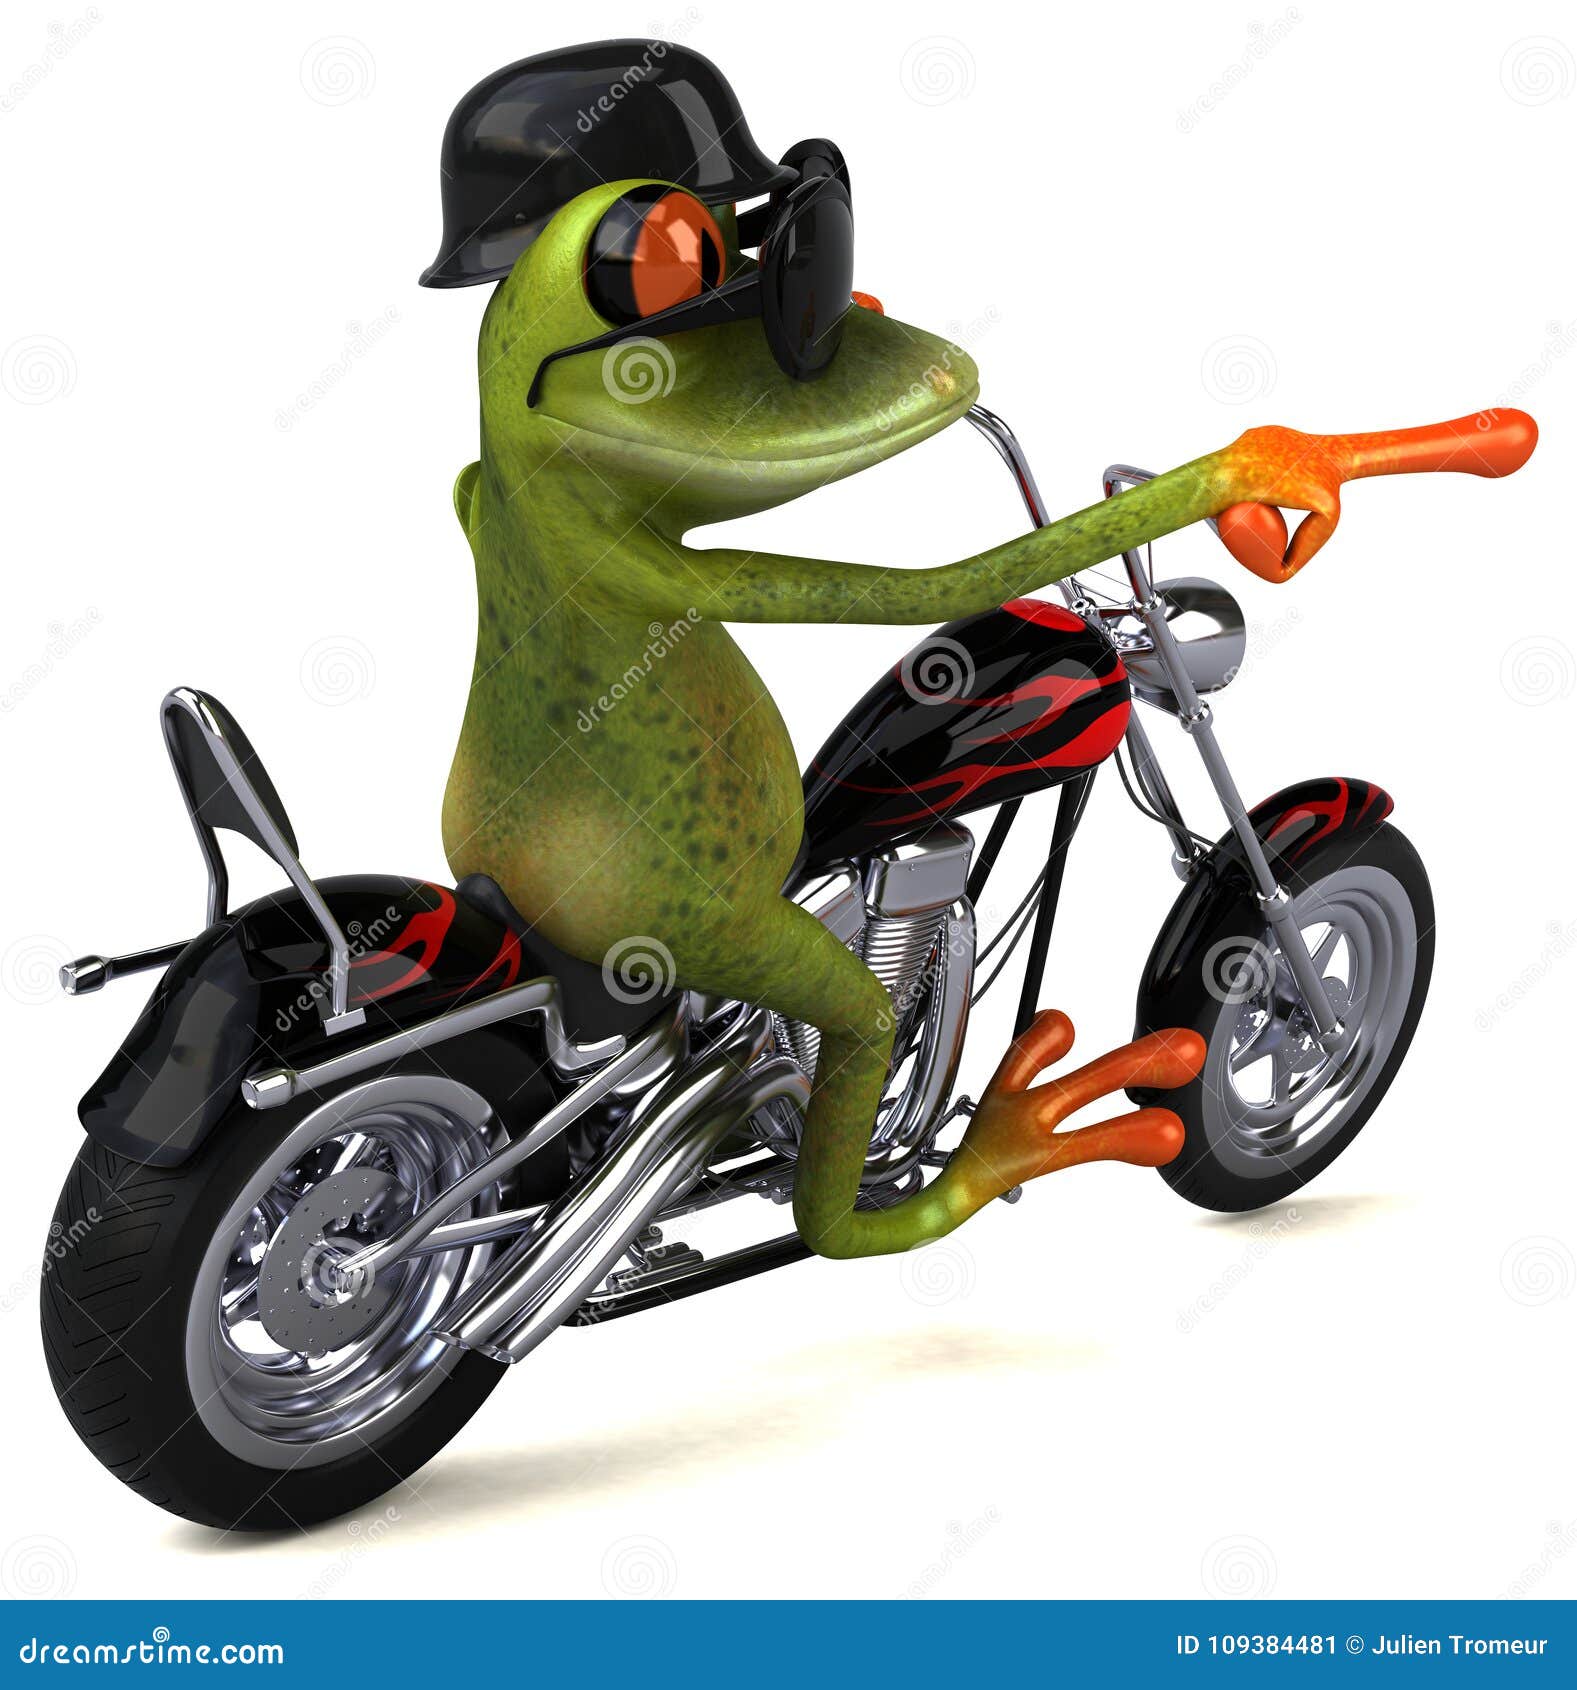 Лягушка на мотоцикле клип. Лягушка на мотоцикле. Лягушка на мопеде. Лягушонок на мопеде. Лягушонок Фрог на мотоцикле.